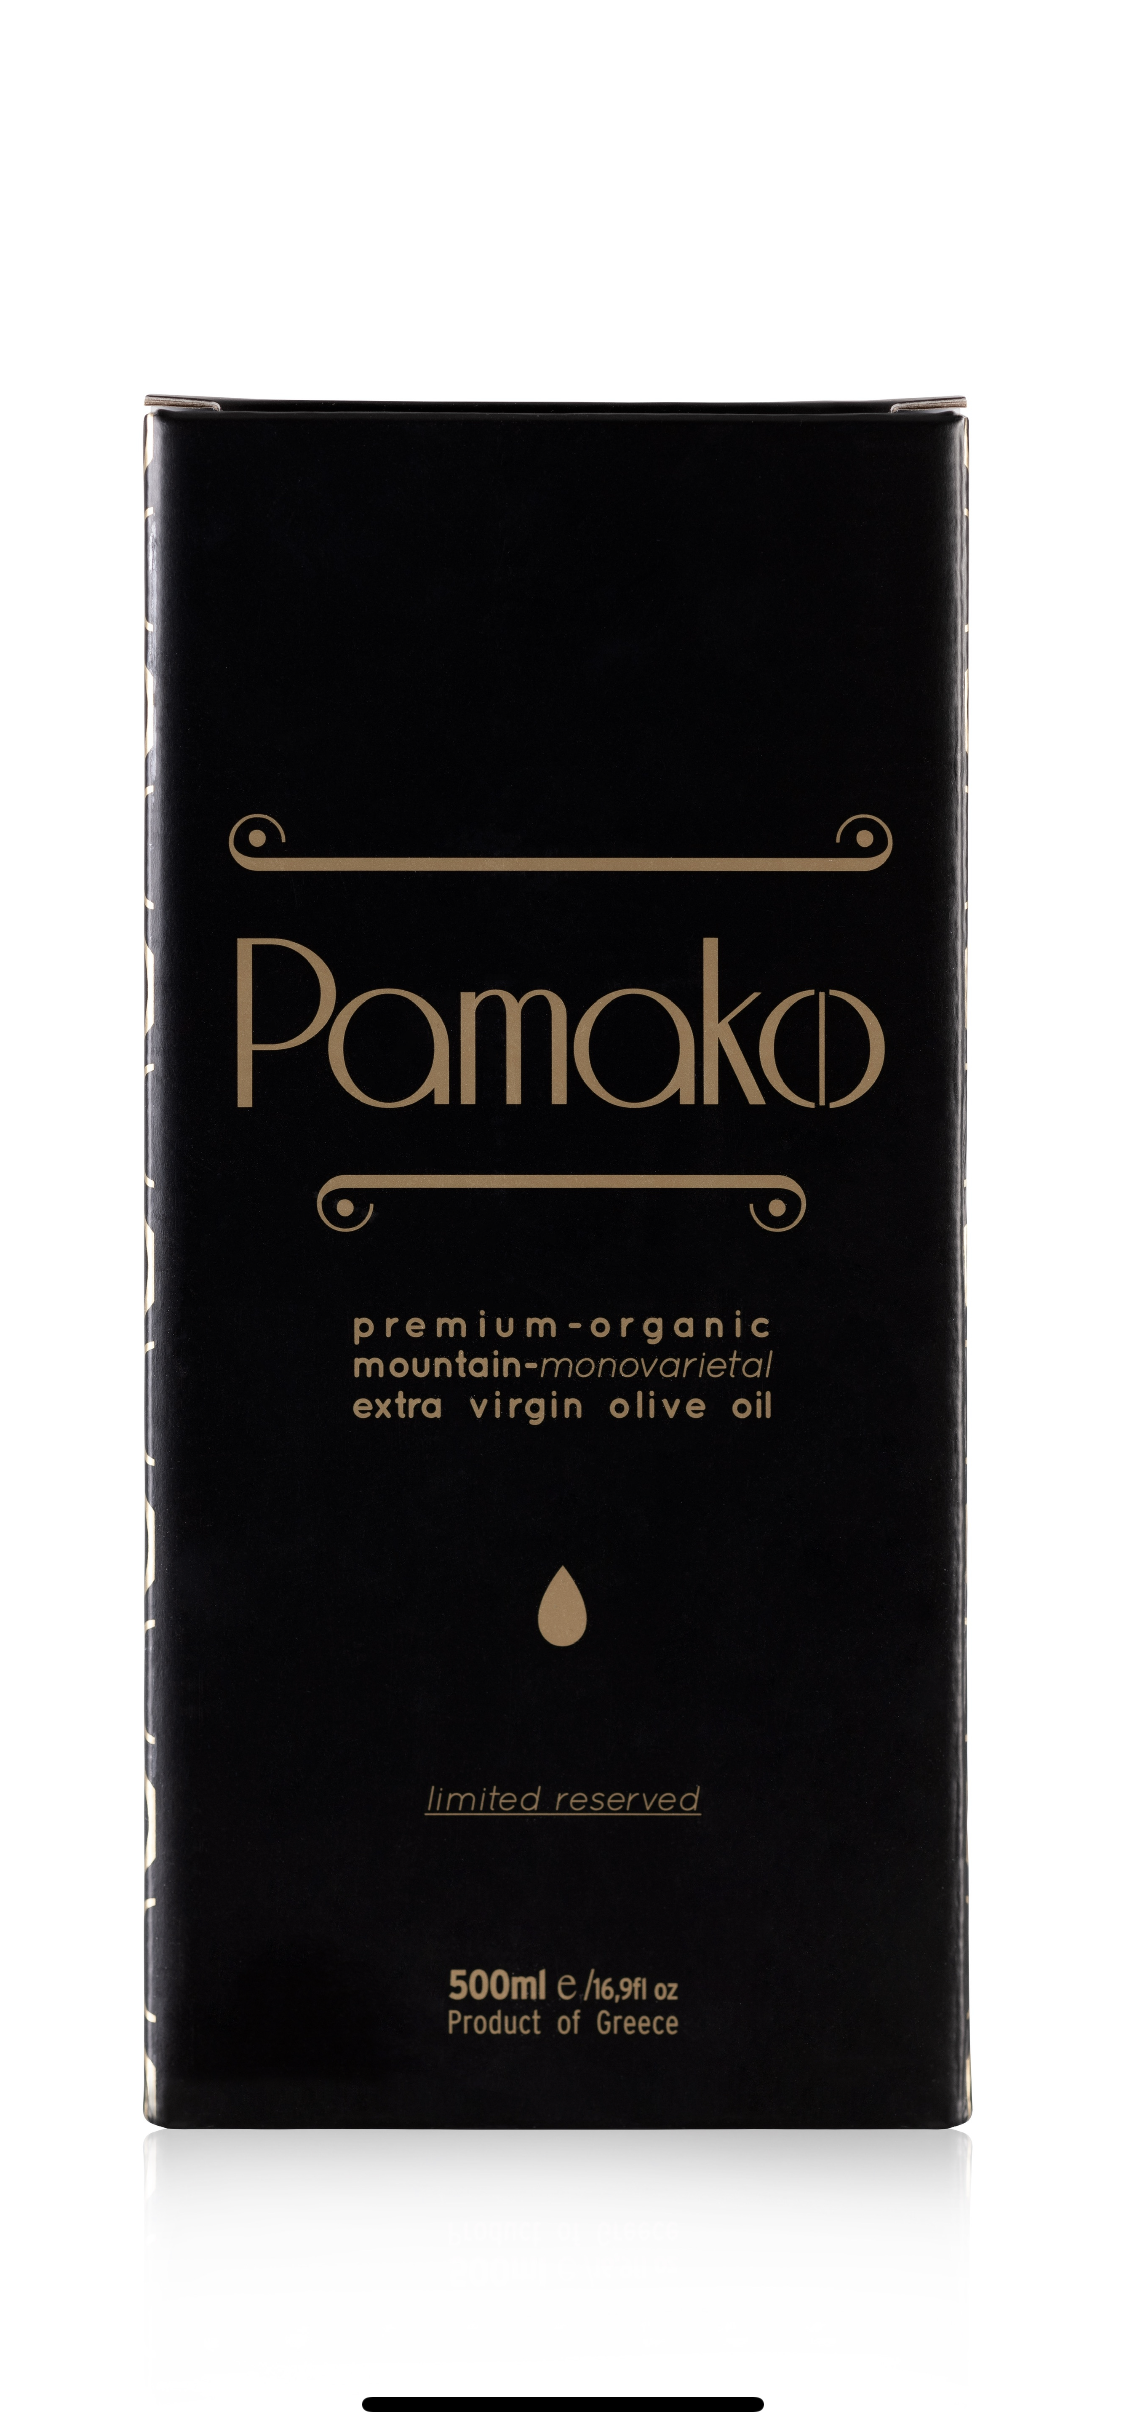 Pamako - Tsounati 500ml Giftbox